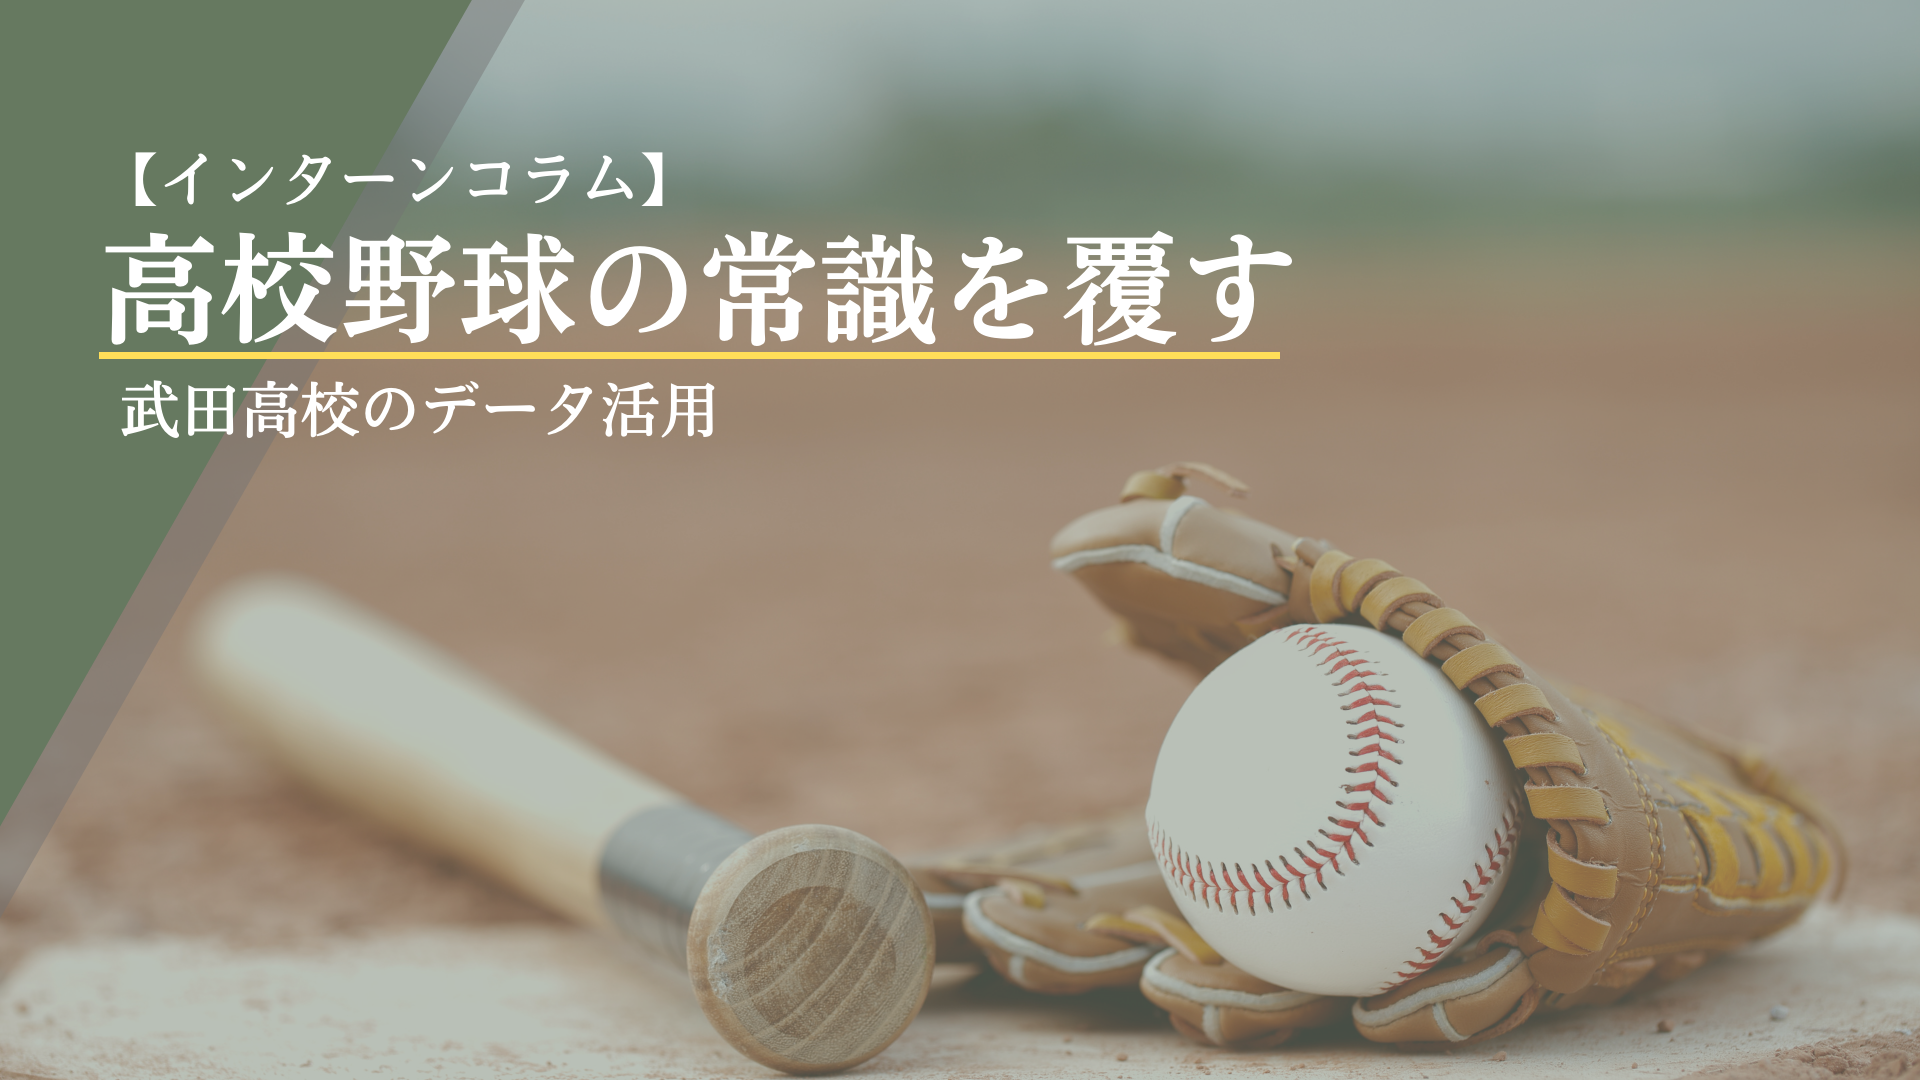 インターンコラム 高校野球の常識を覆す 武田高校のデータ活用 R